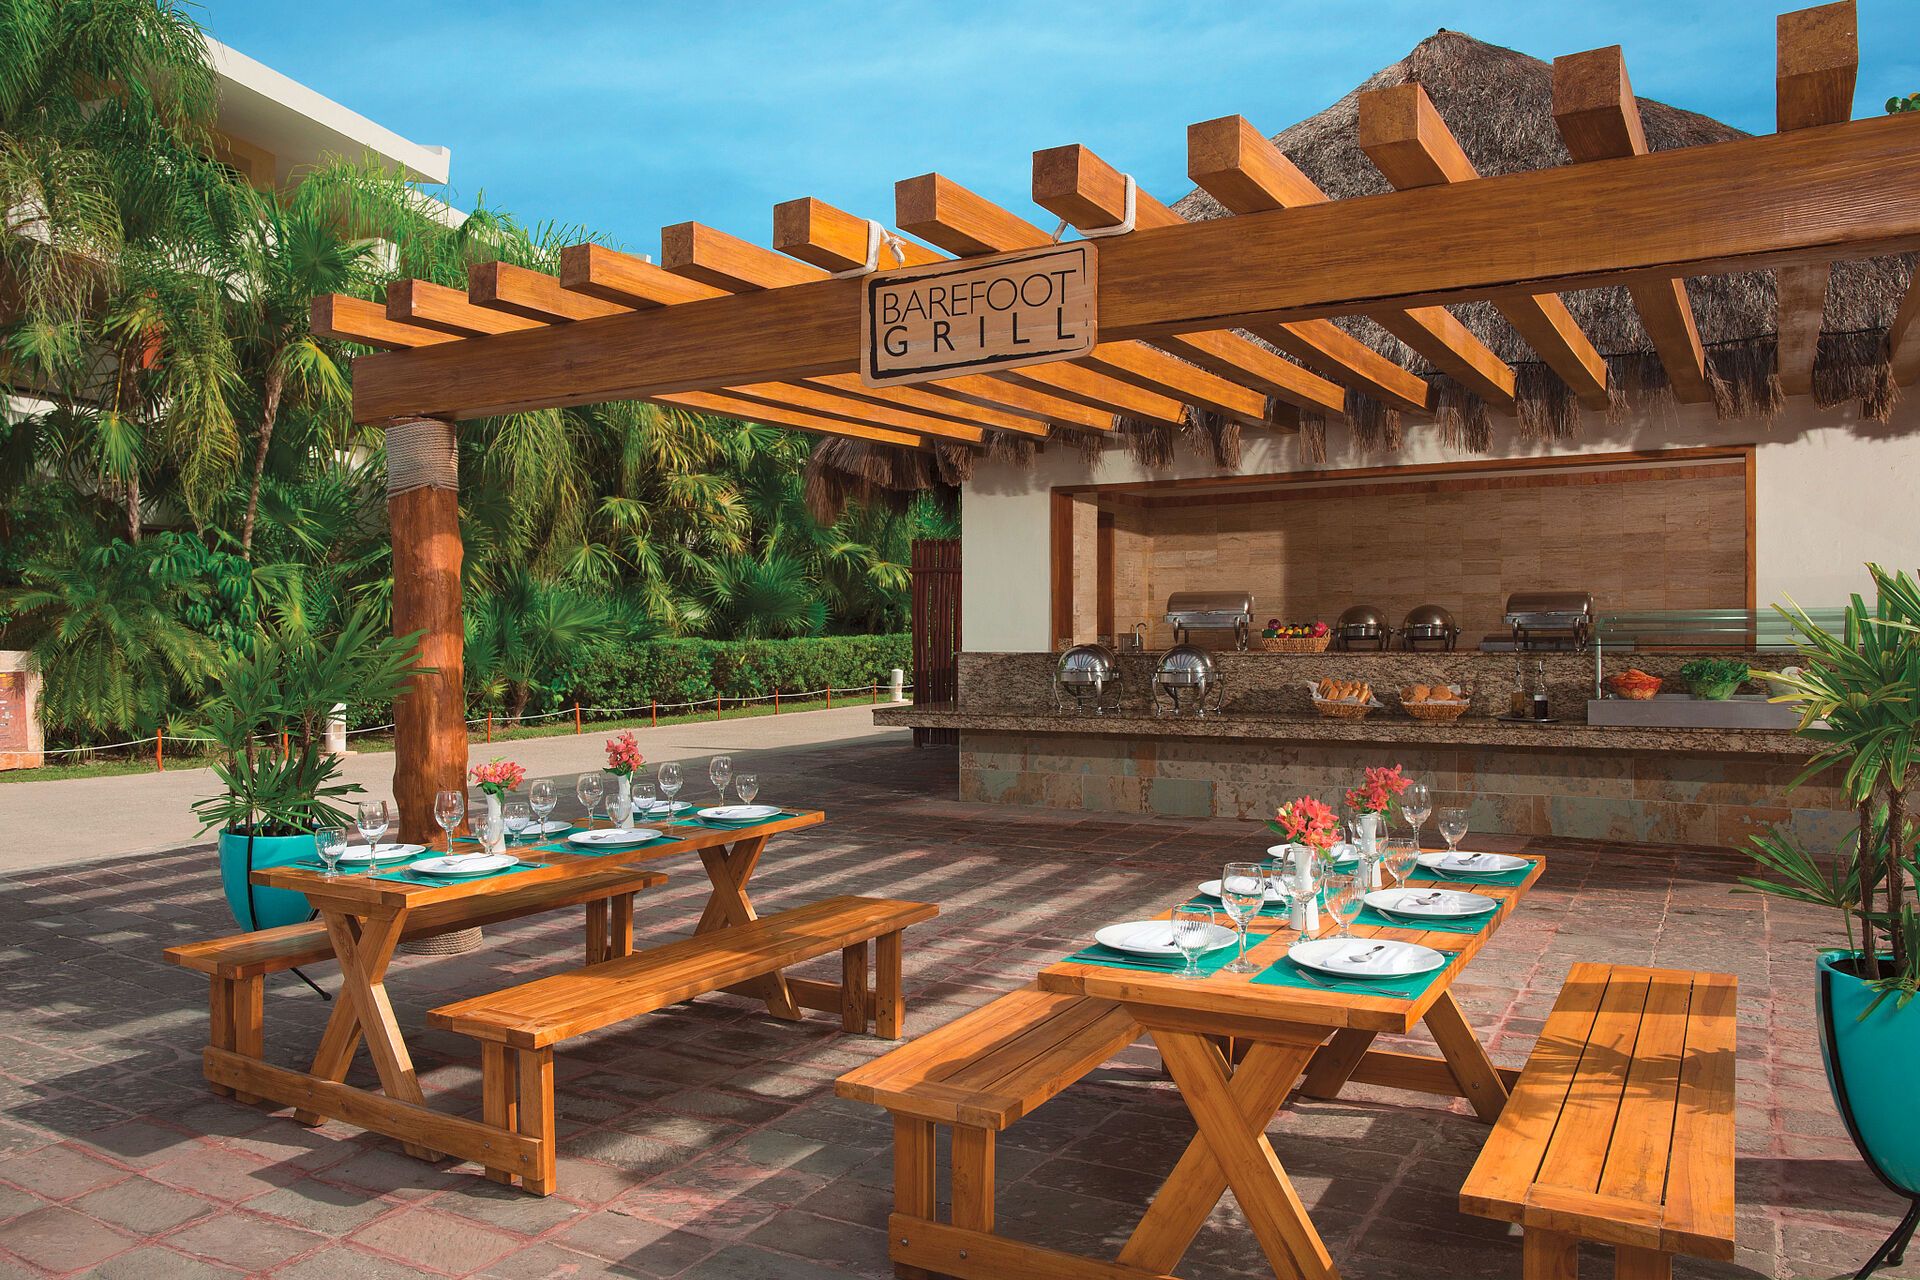 Mexique - Riviera Maya - Puerto Morelos - Hotel Dreams Sapphire Resort & Spa 5*